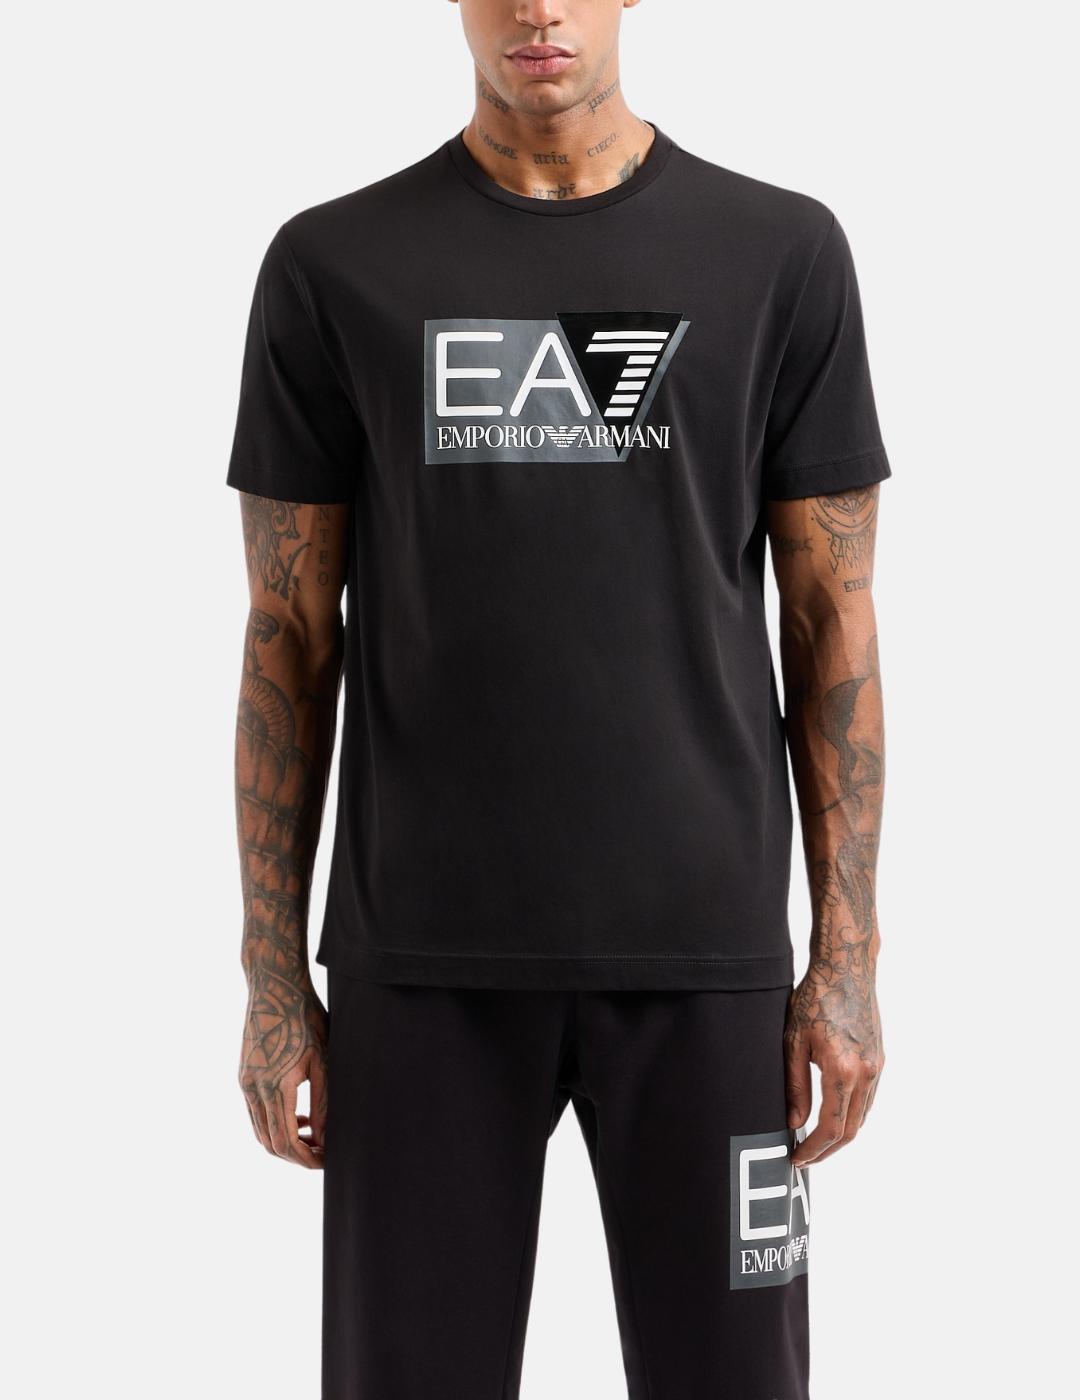 Camiseta EA7 negra maxilogo blanco hombre